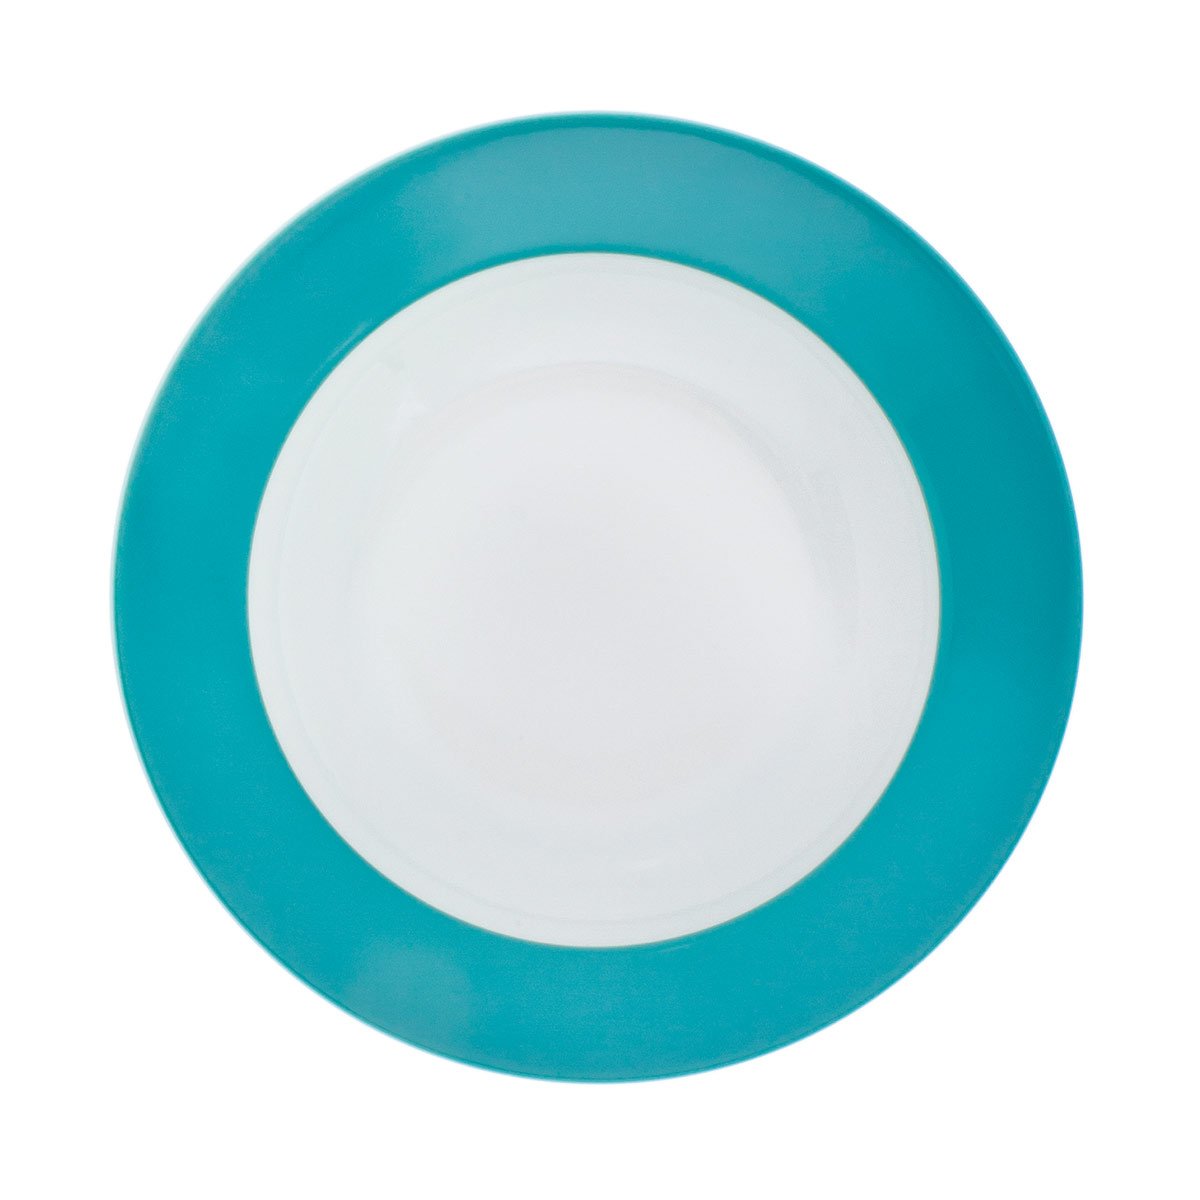 KAHLA Pronto Colore Plate, Porcelain, Petrol, 22 cm Soup Plate, 573406 A722